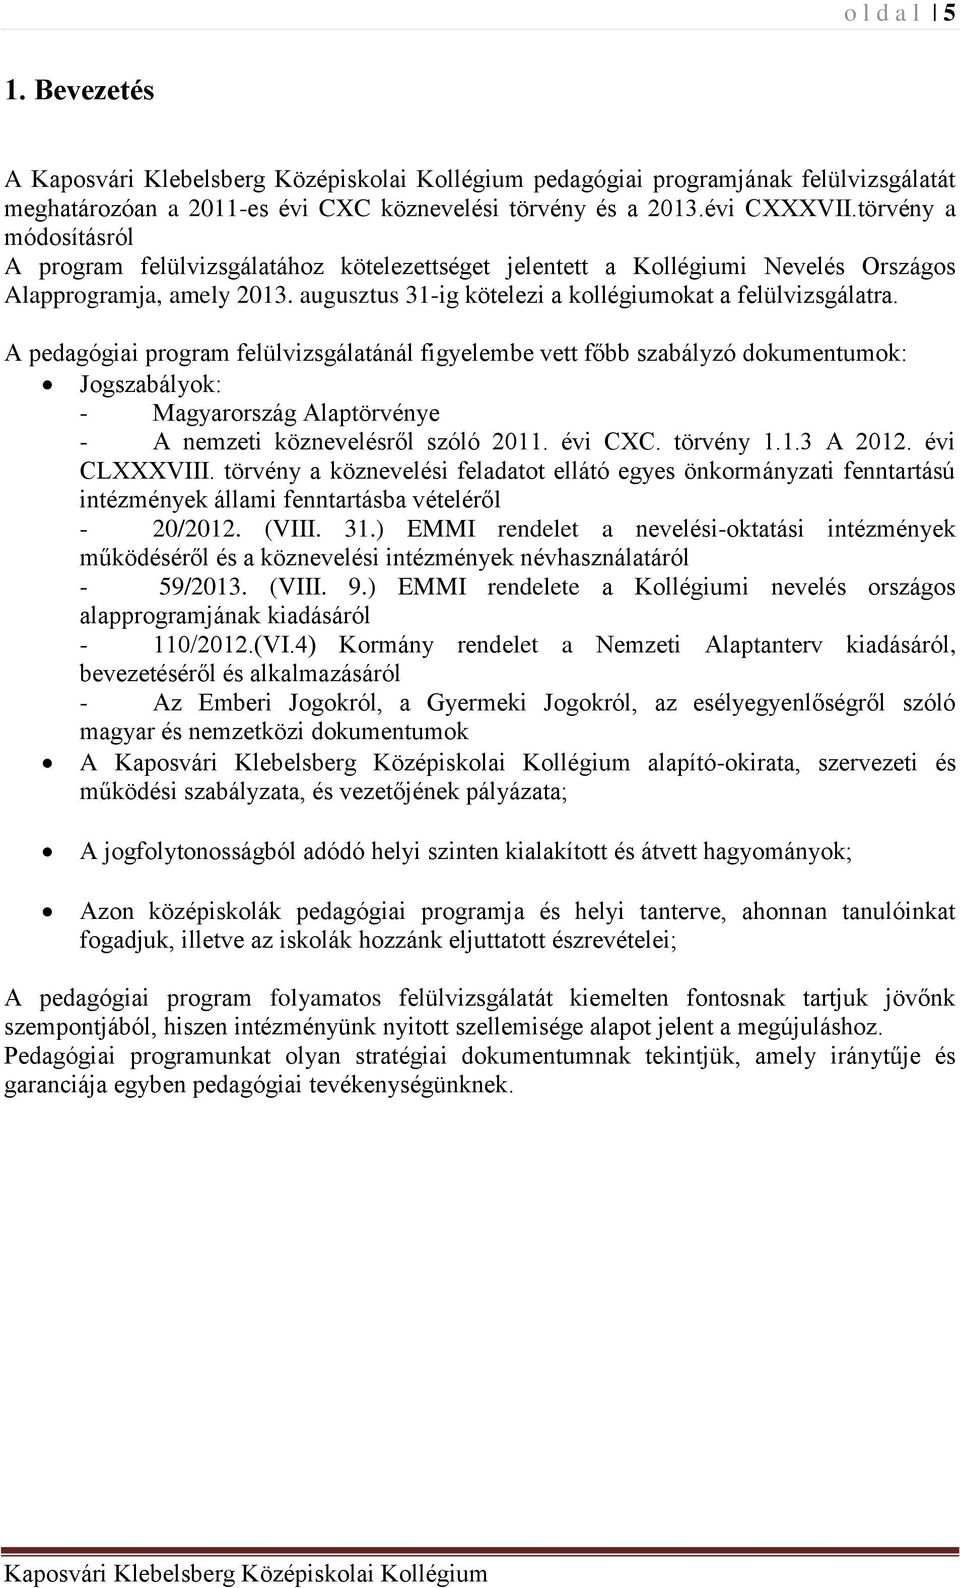 A pedagógiai program felülvizsgálatánál figyelembe vett főbb szabályzó dokumentumok: Jogszabályok: - Magyarország Alaptörvénye - A nemzeti köznevelésről szóló 2011. évi CXC. törvény 1.1.3 A 2012.